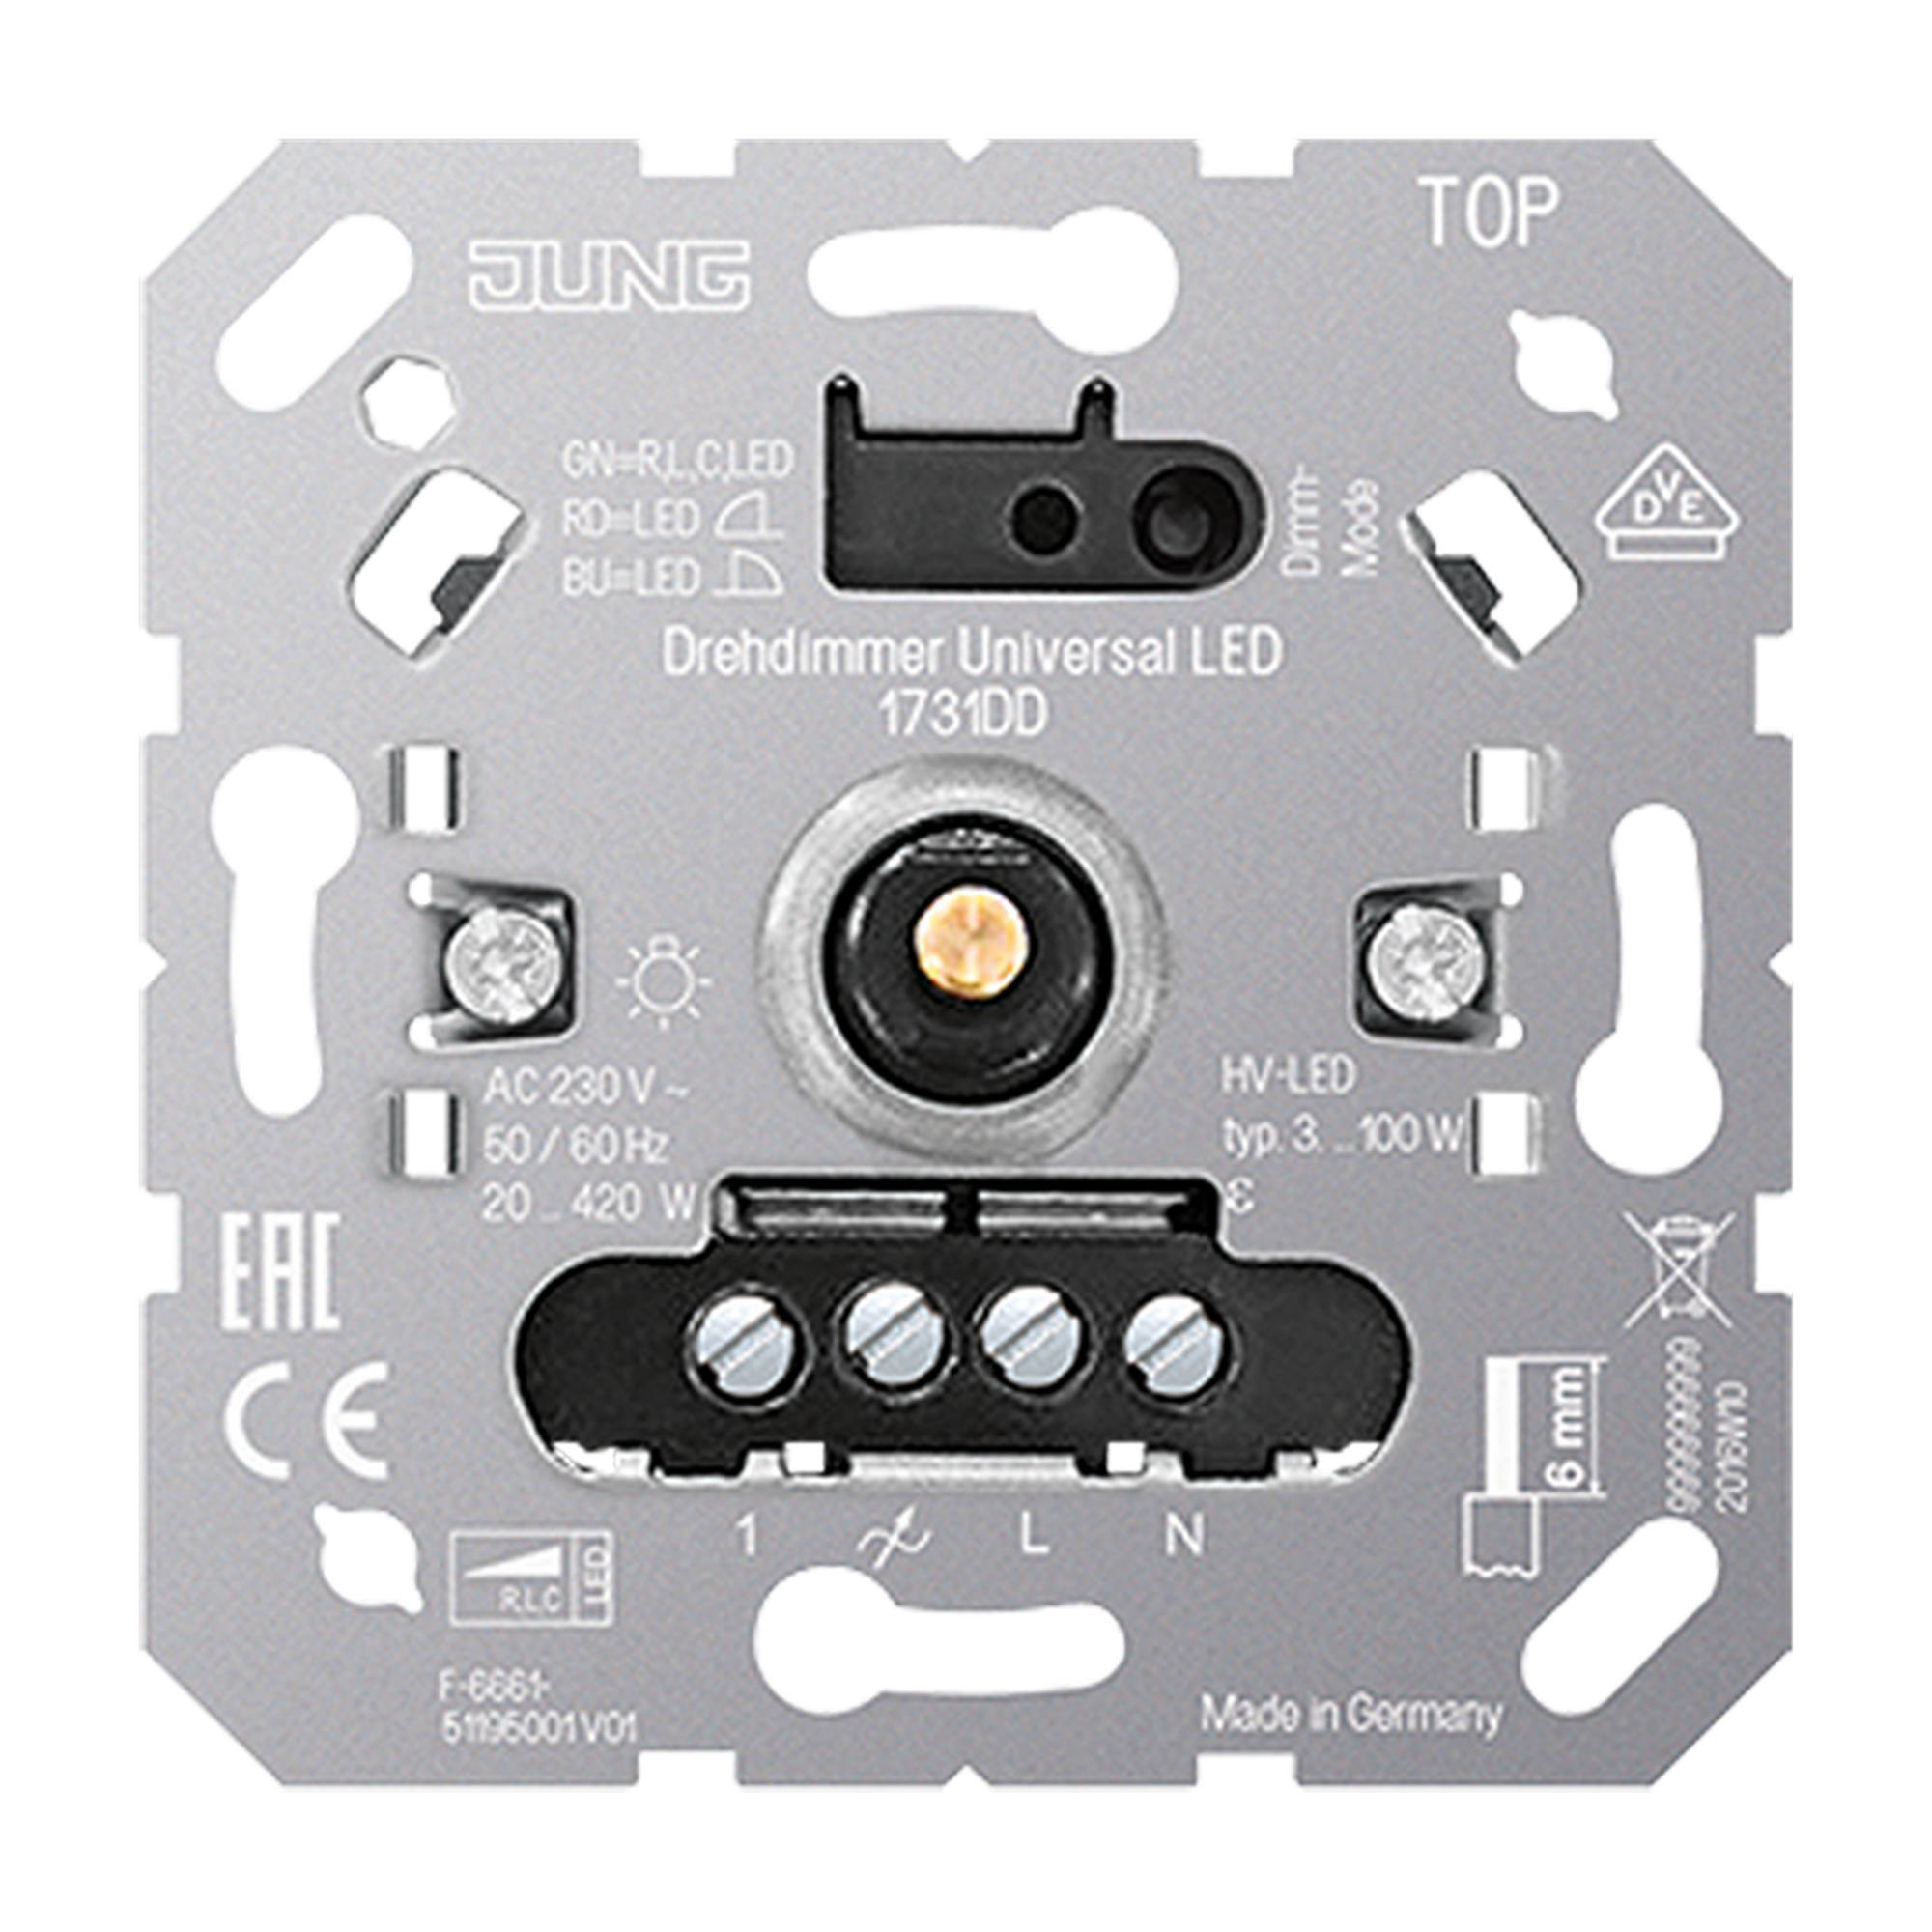 Drehdimmer mit Druckwechselschalter LED Universal + product picture